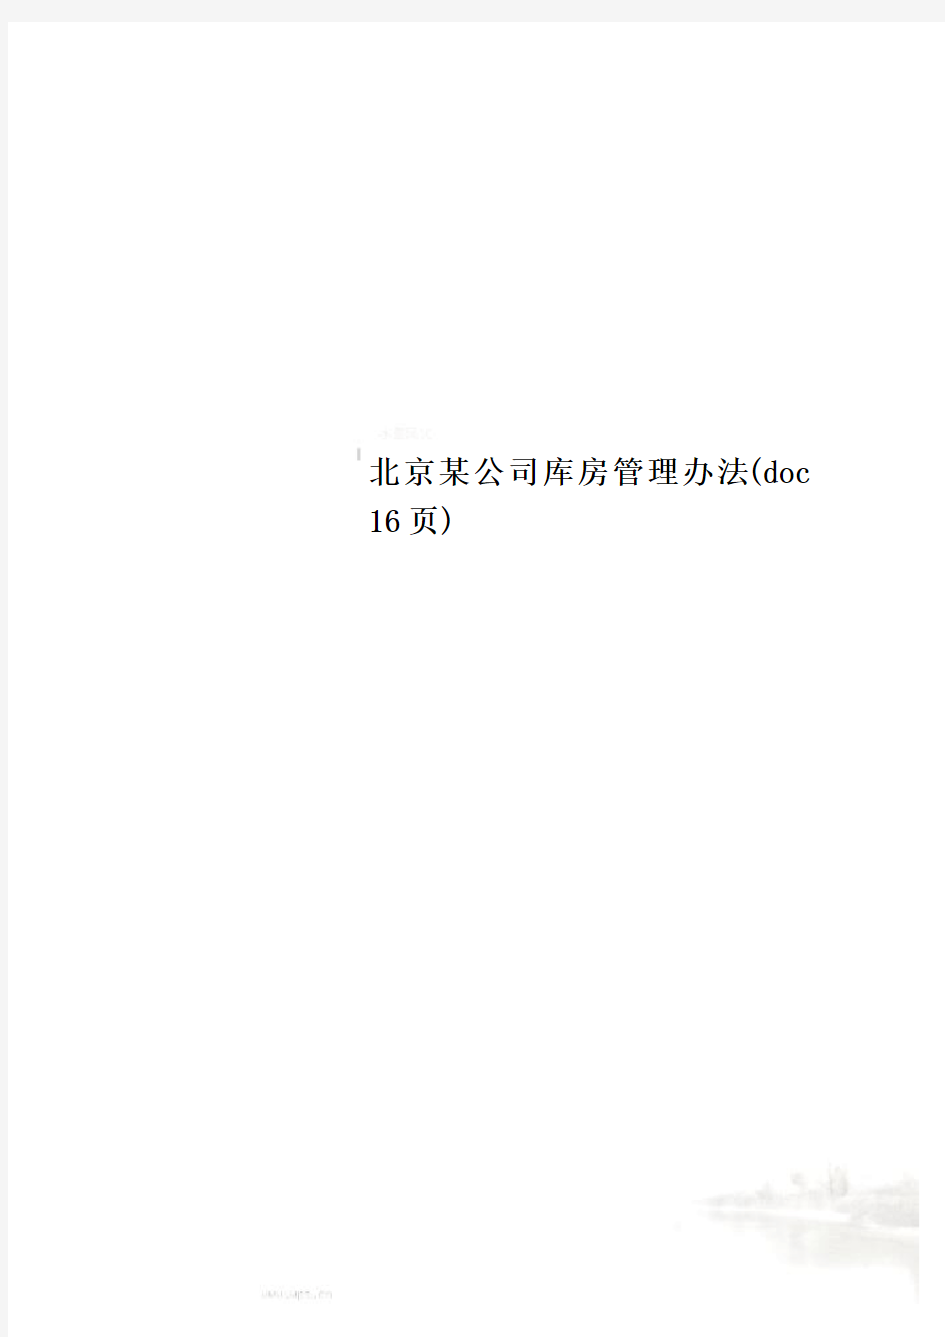 北京某公司库房管理办法(doc 16页)